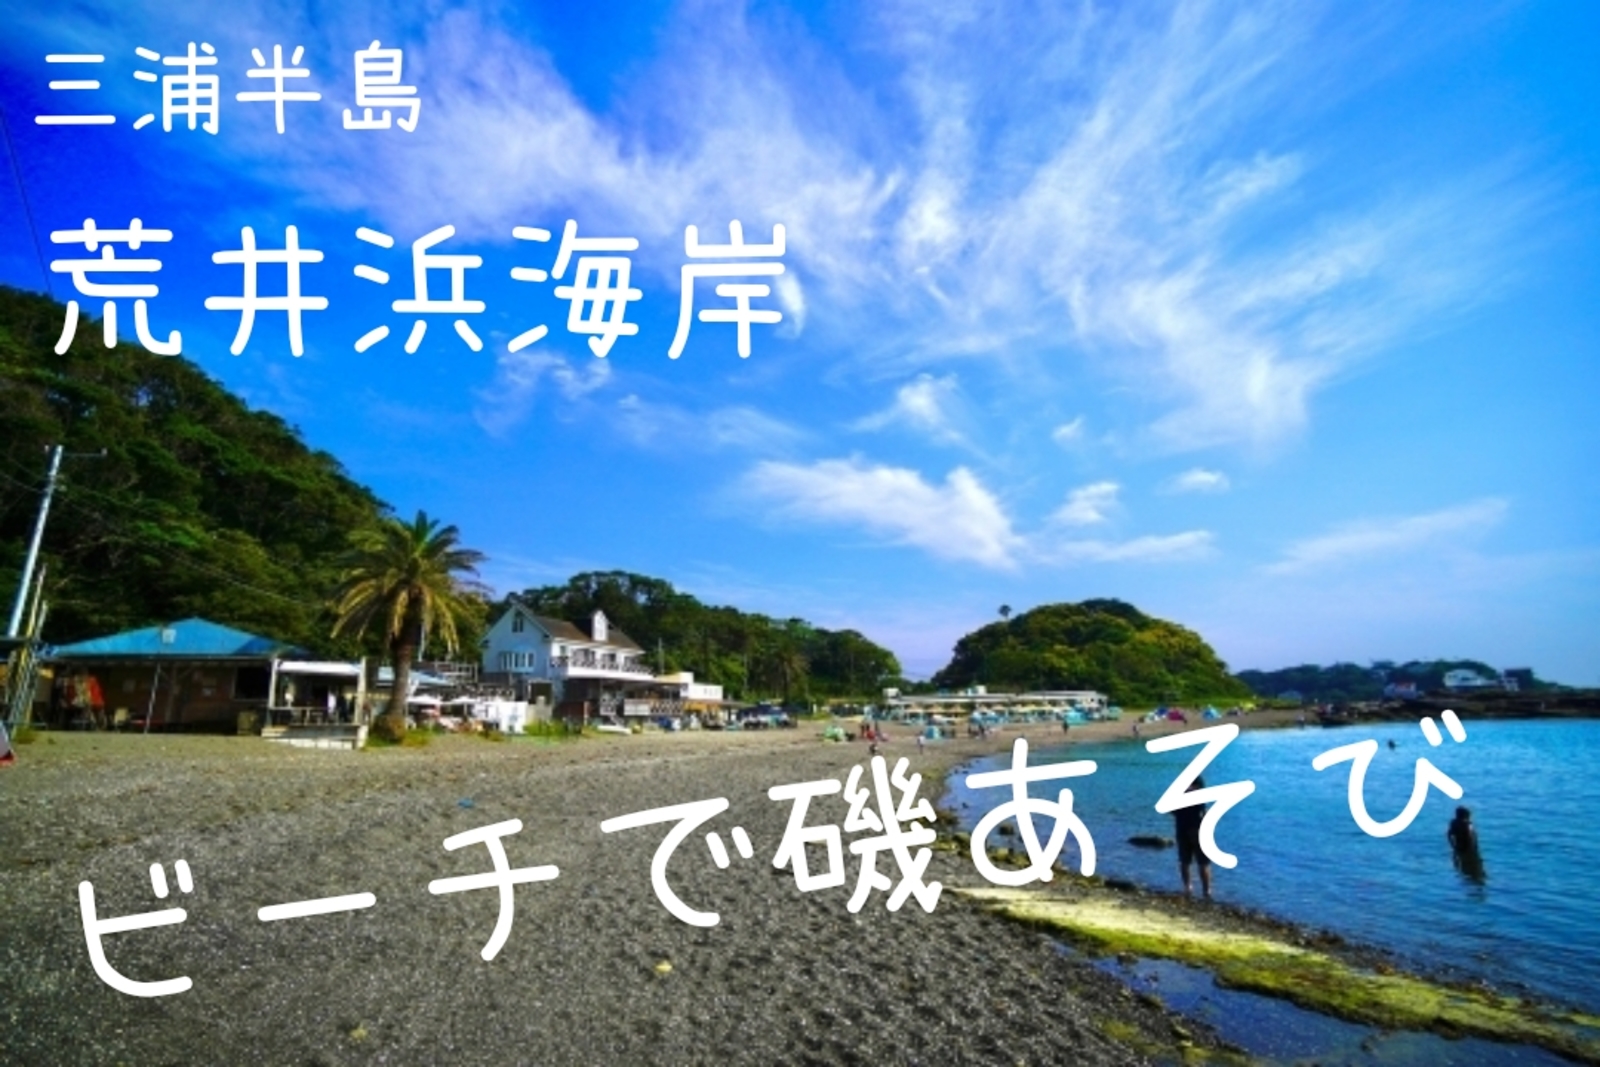 【9/23 三浦半島 荒井浜海岸でYouTube】 透明度の高い美しいビーチで磯遊び♪水遊び